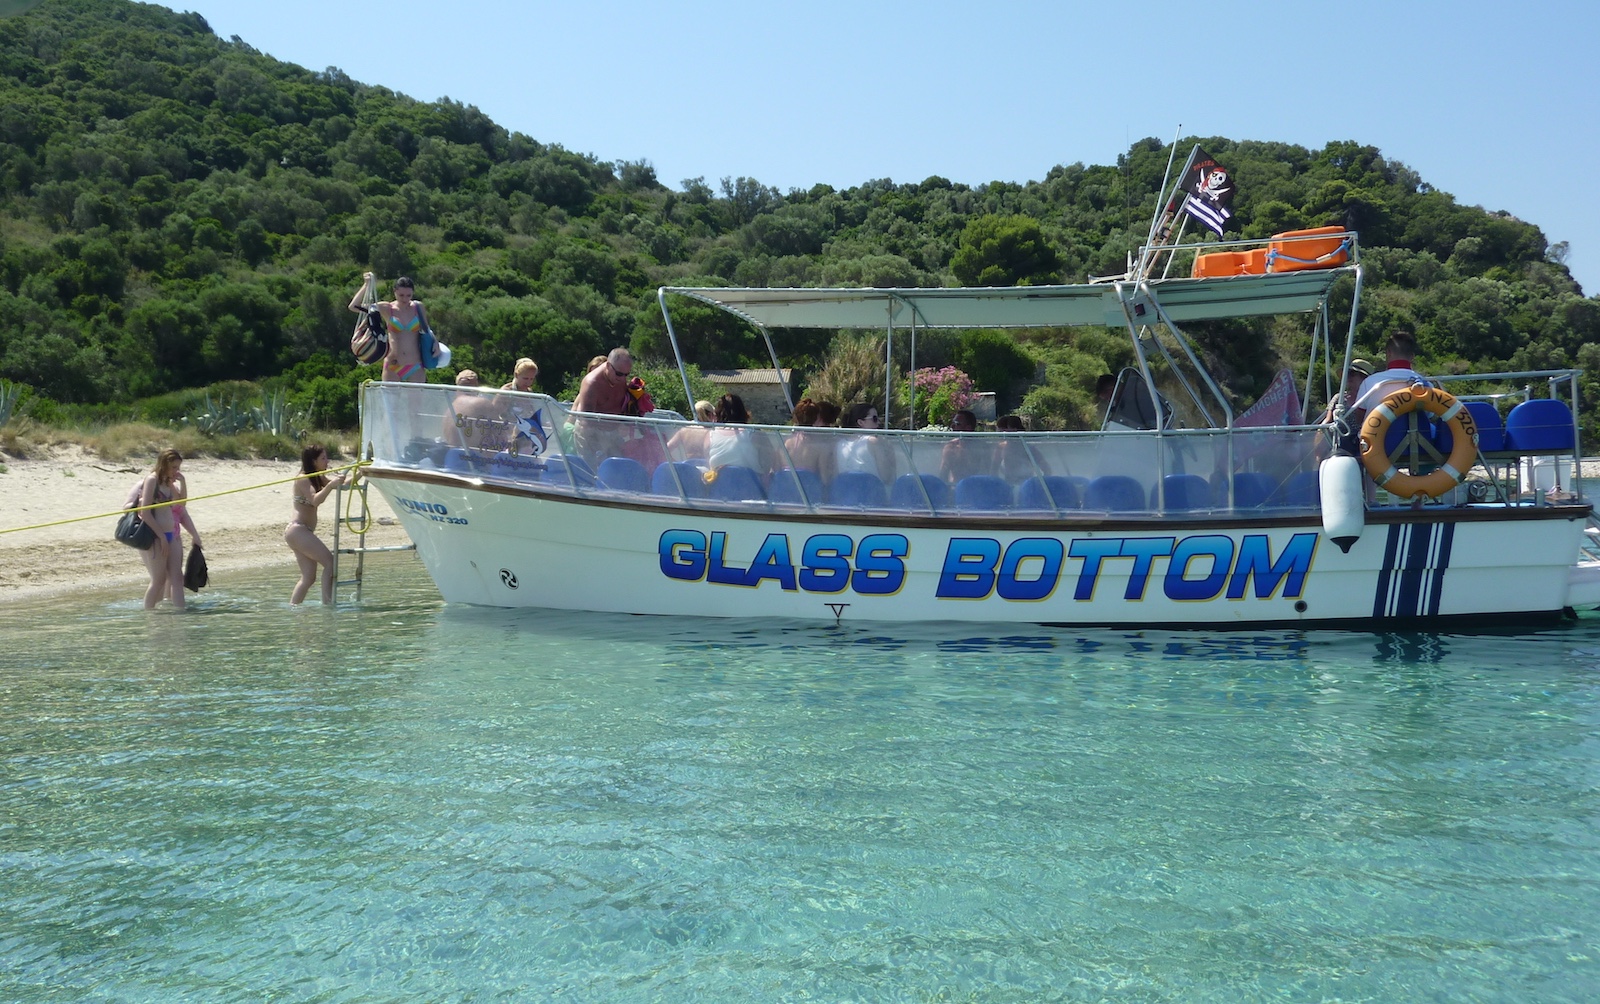 ŻÓŁWIE CARETTA-CARETTA excursions boat trip